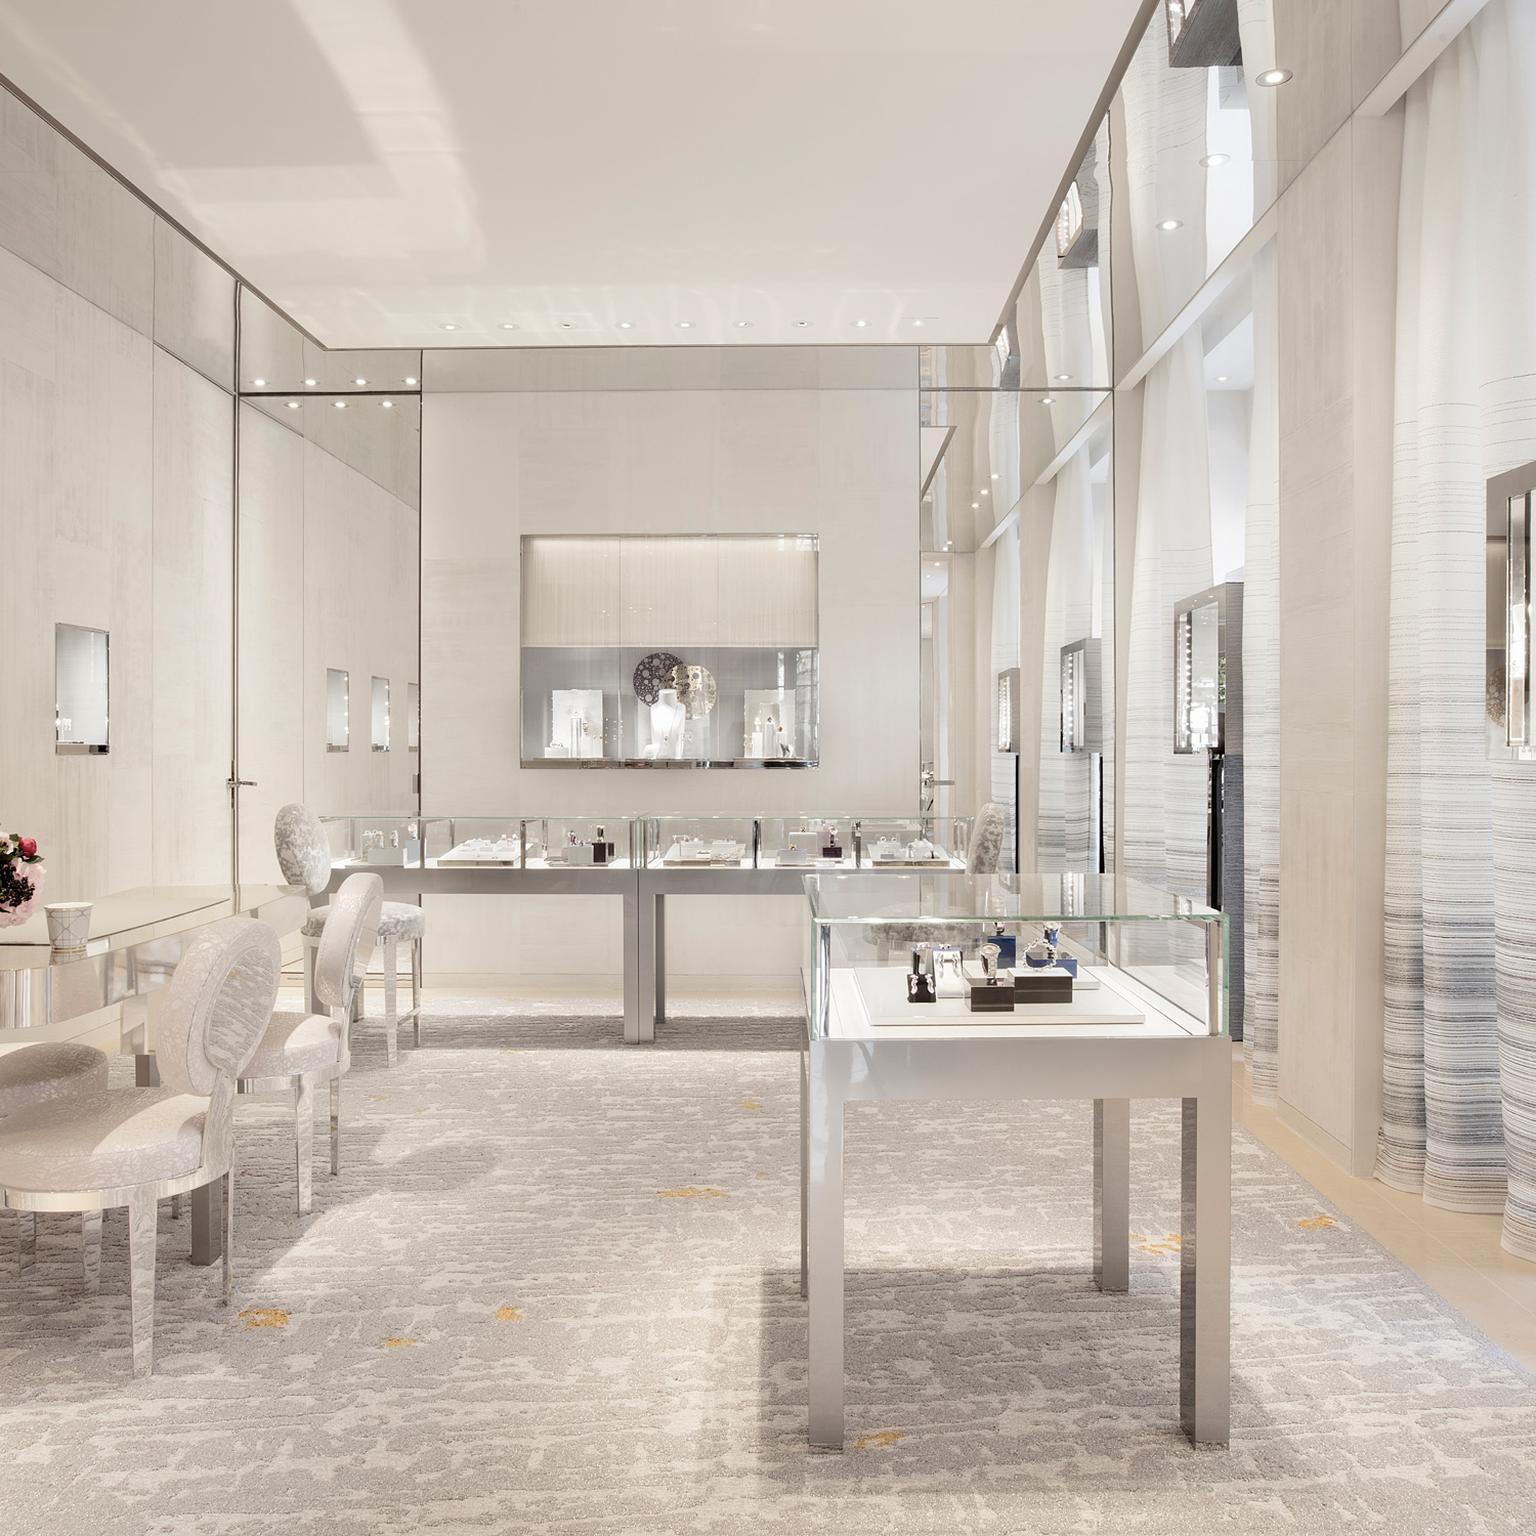 Interior of the new Dior boutique  on Avenue Montaigne